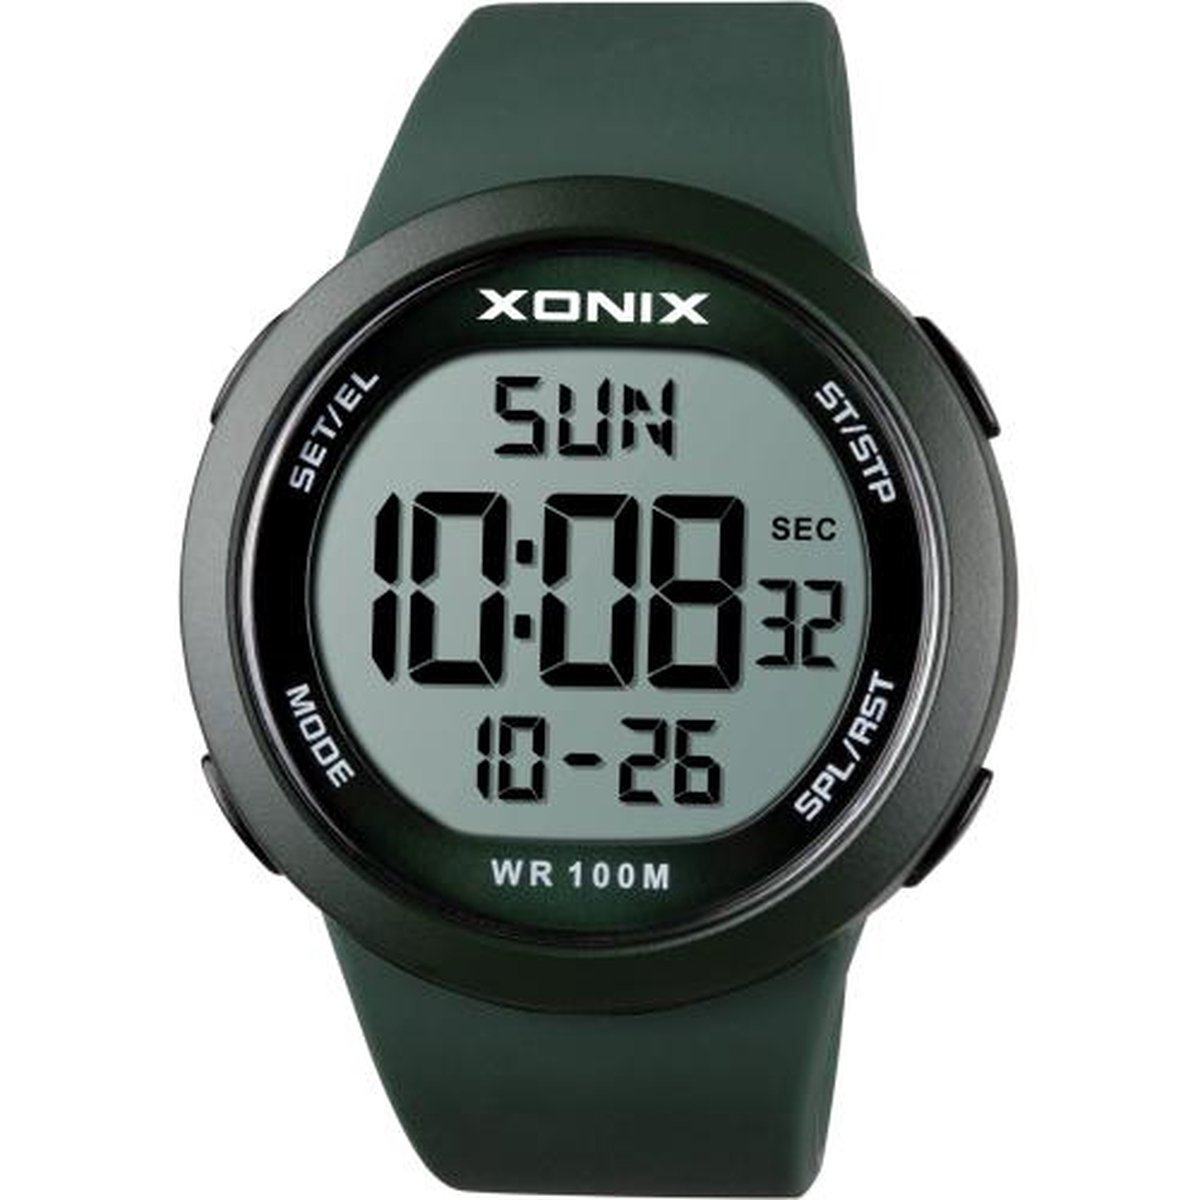 Xonix NY-A01 - Horloge - Digitaal - Heren - Mannen - Rond - Siliconen band - ABS - Cijfers - Achtergrondverlichting - Alarm - Start-Stop - Chronograaf - Tweede tijdzone - Waterdicht - 10 ATM - Groen - Zwart